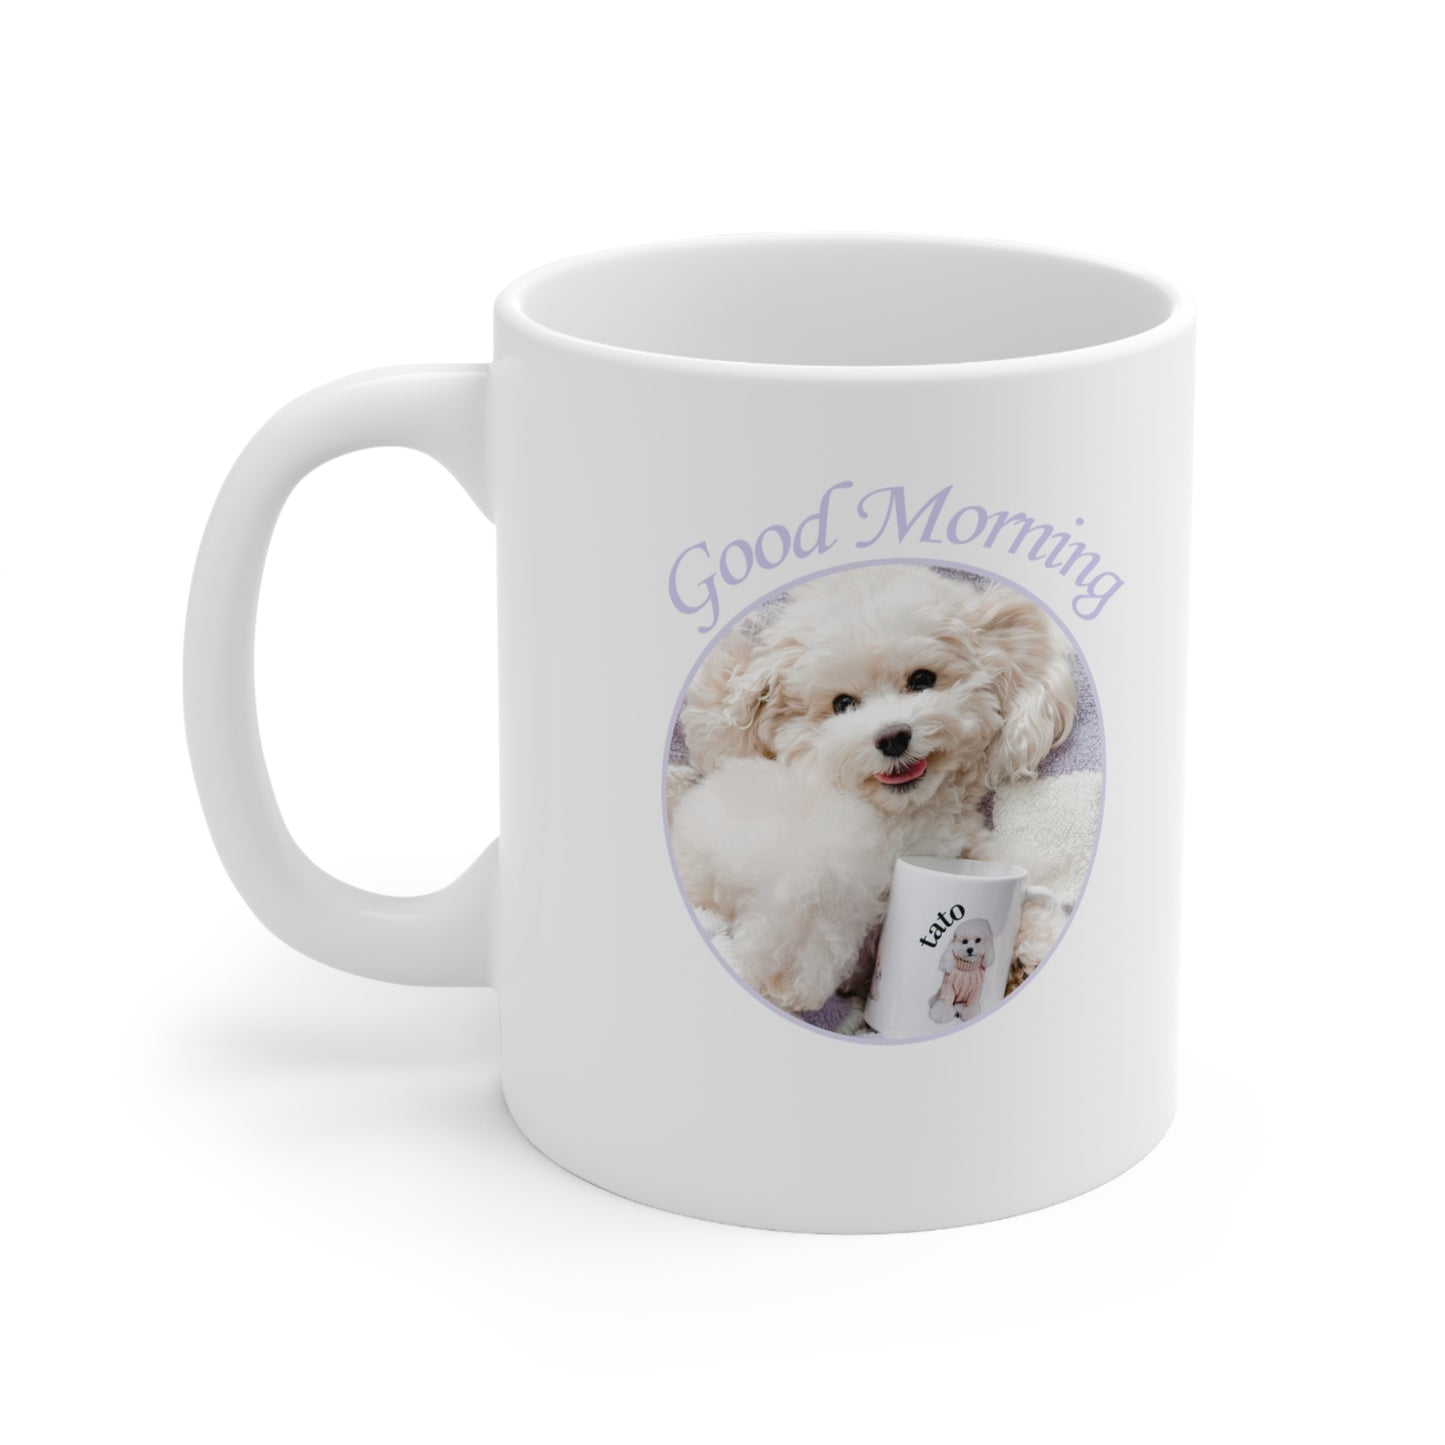 Tato's "Good Morning" Mug